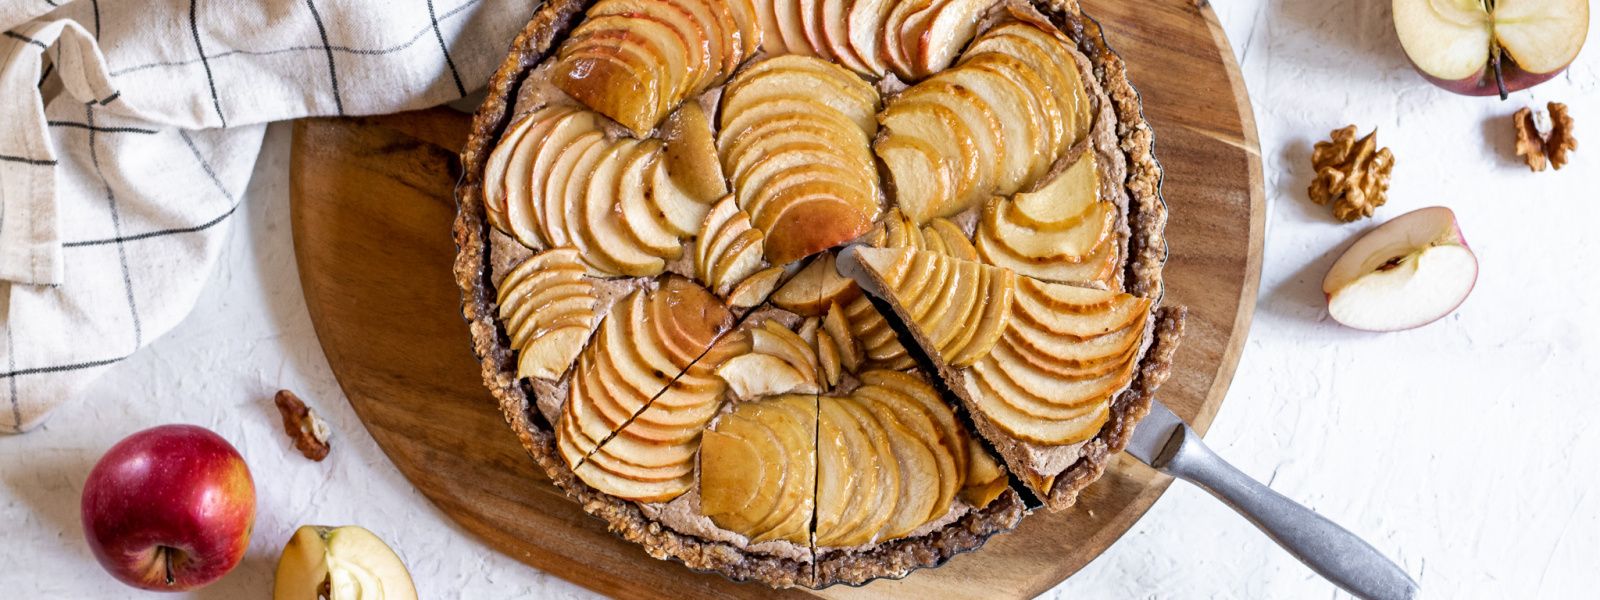 Jablečný koláč s tvarohovo-ořechovou náplní